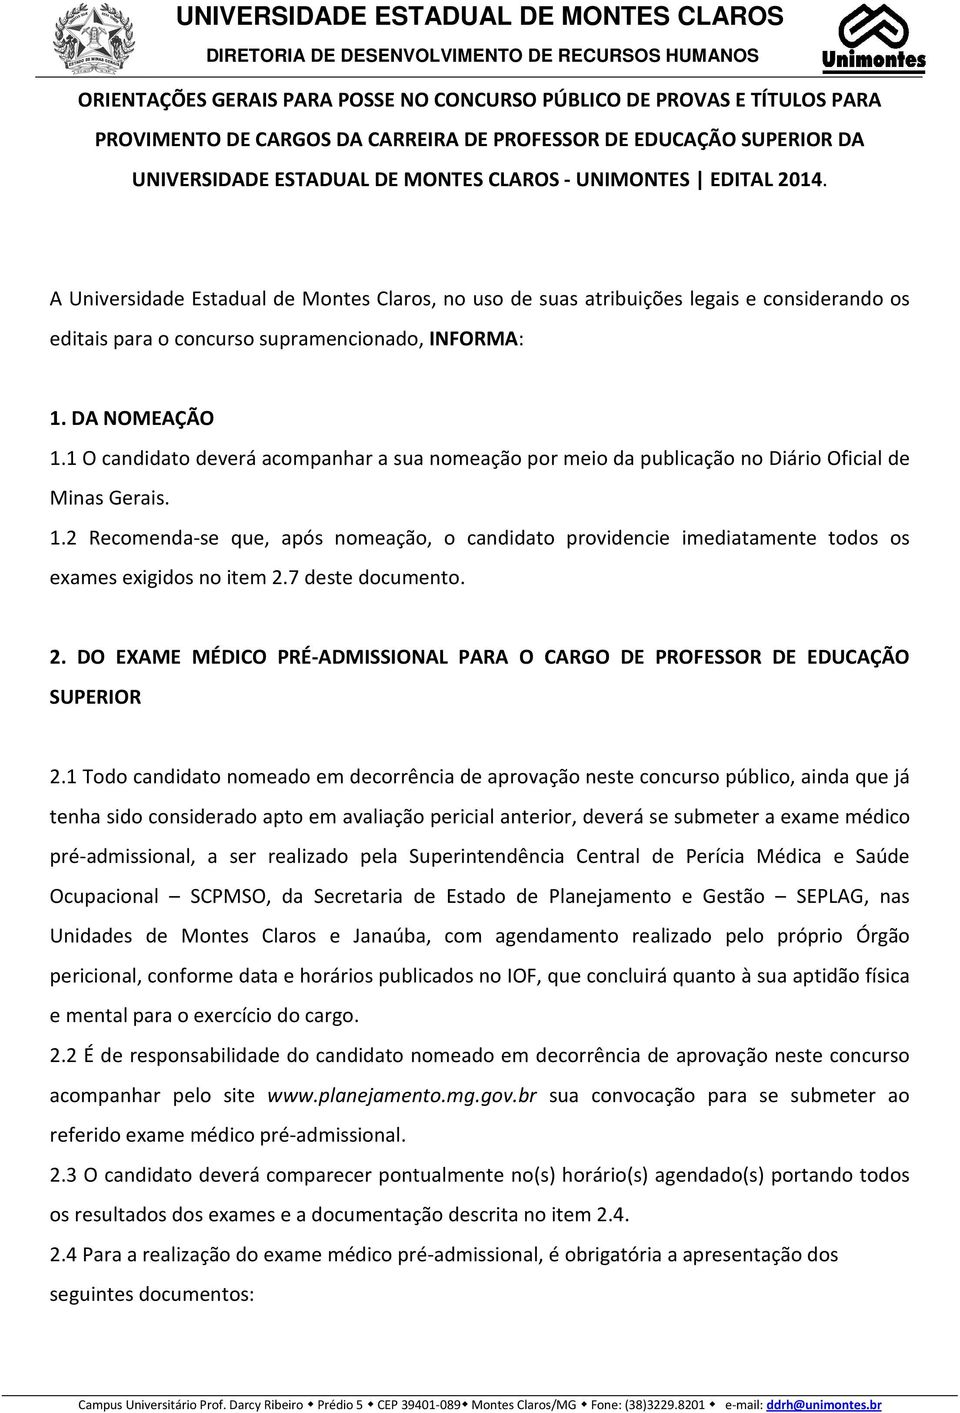 1 O candidato deverá acompanhar a sua nomeação por meio da publicação no Diário Oficial de Minas Gerais. 1.